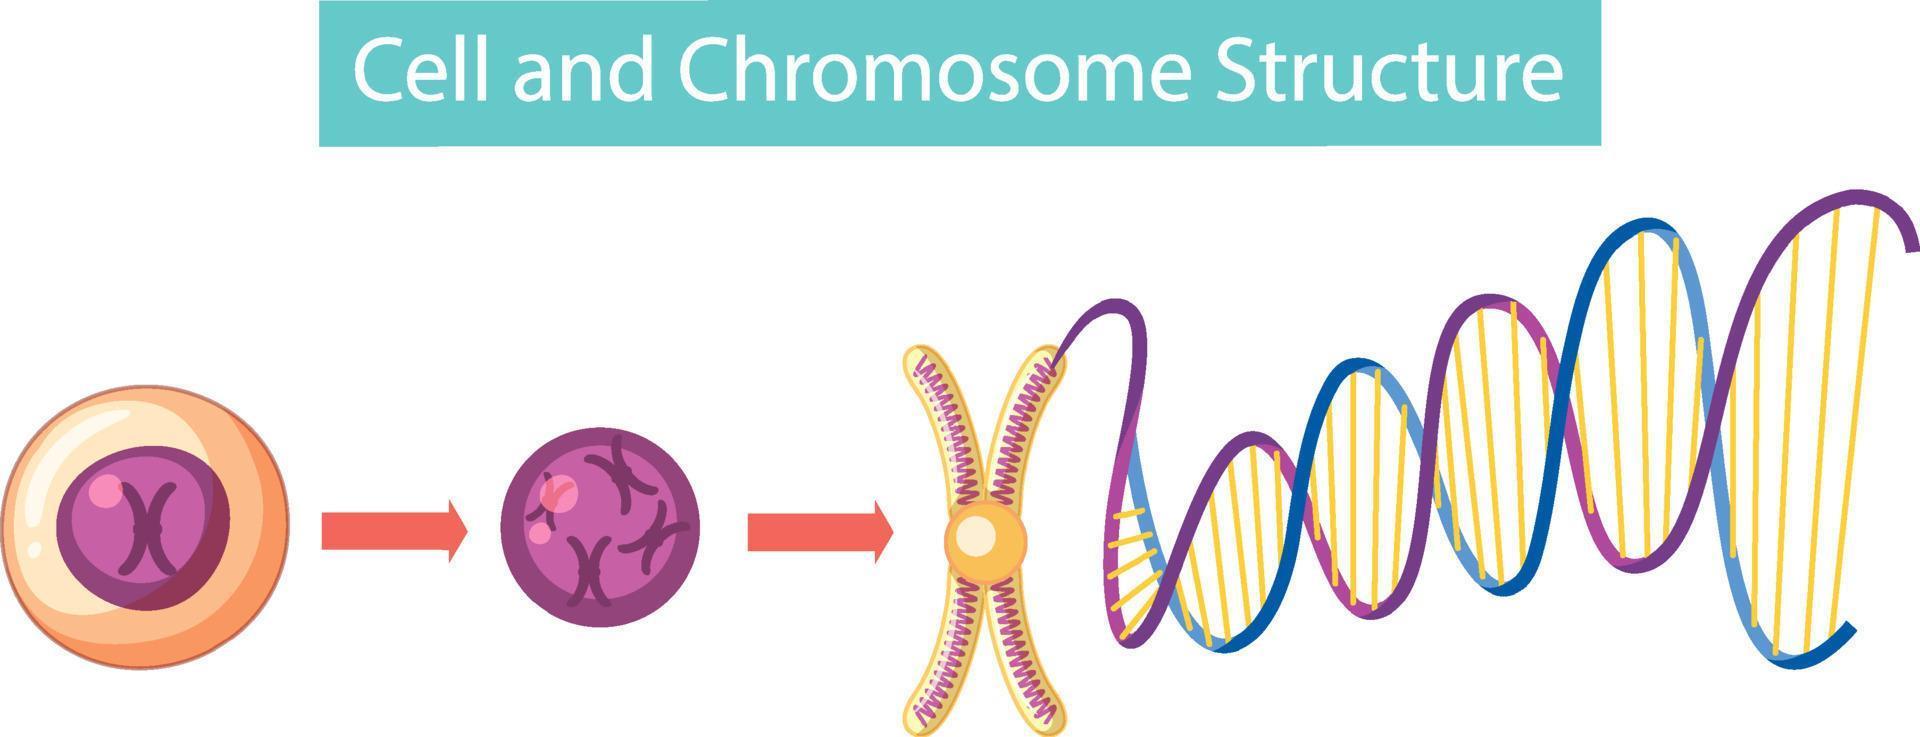 cell och kromosomstruktur infographic vektor